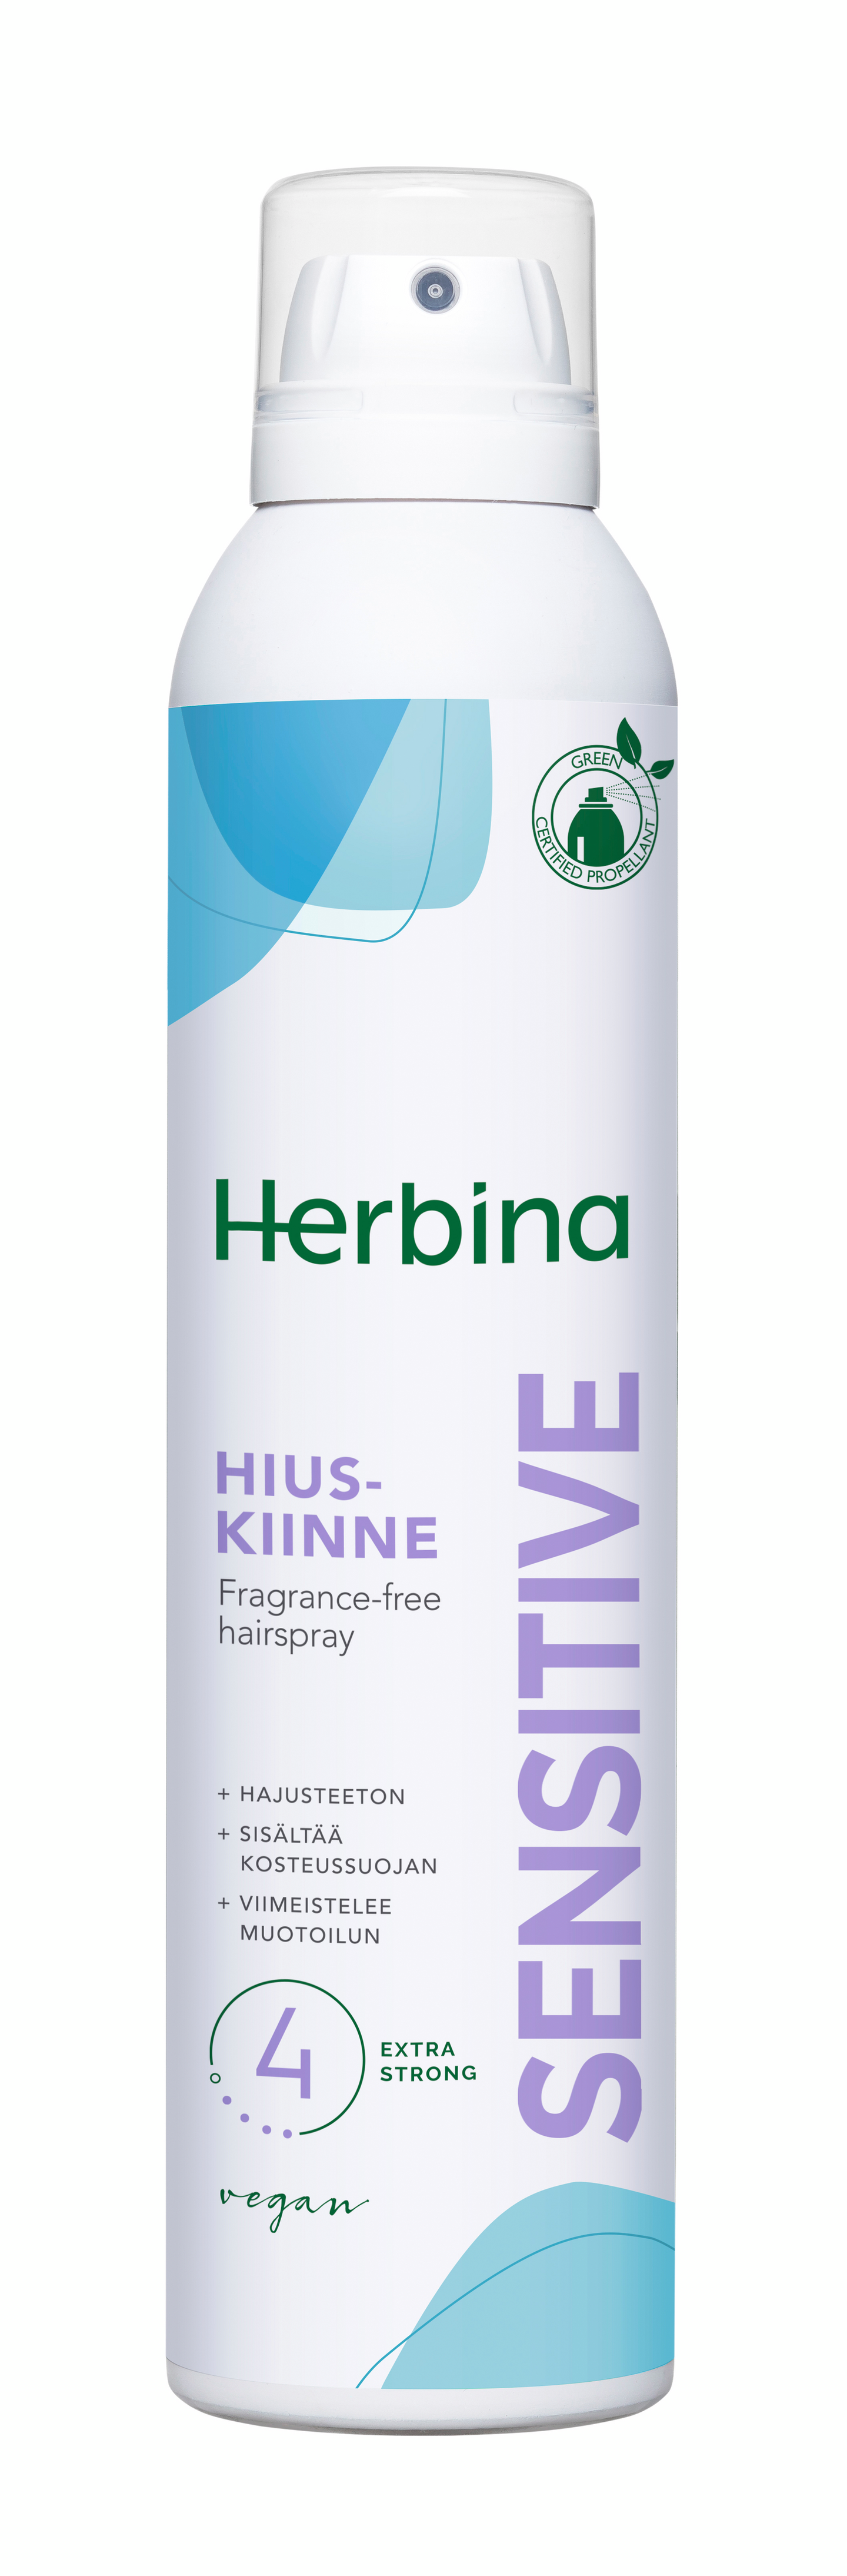 Herbina hiuskiinne 250ml sensitive erittäin voimakas hajusteeton